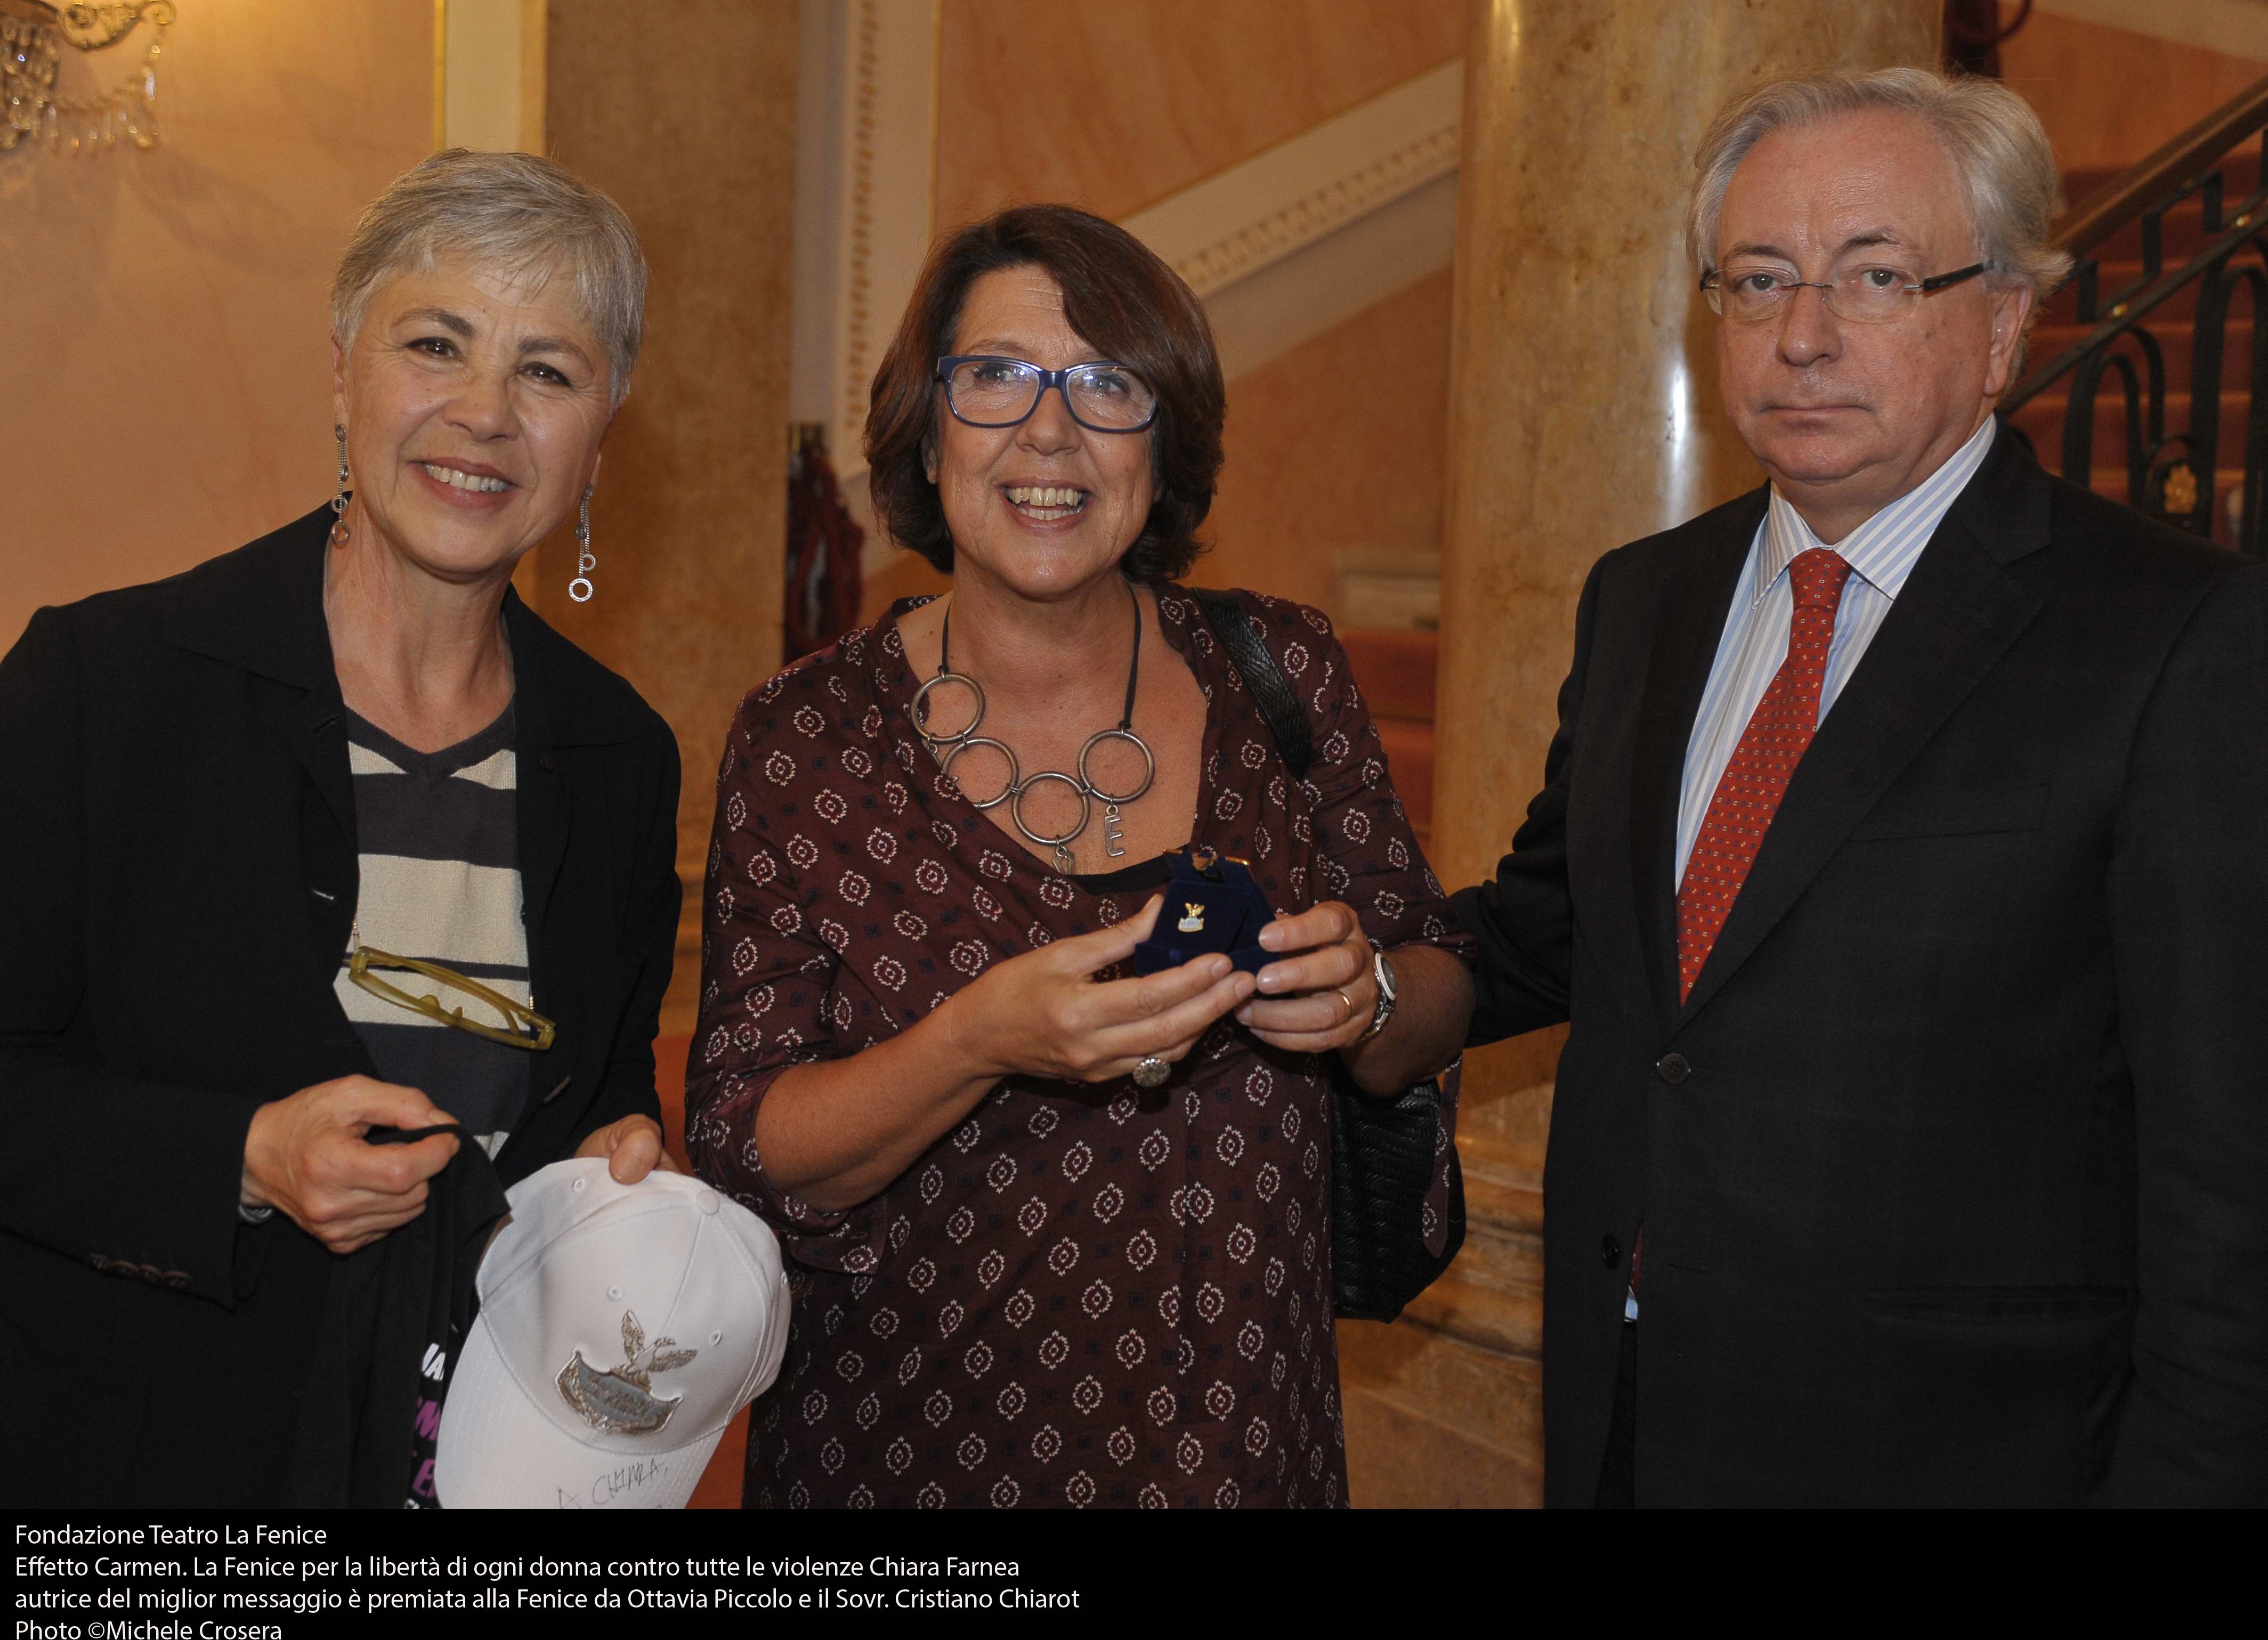 Chiara Farnea Croff with Italian actress Ottavia Piccolo and Cristian Chiarot, the Sovrintendente of the Teatro la Fenice